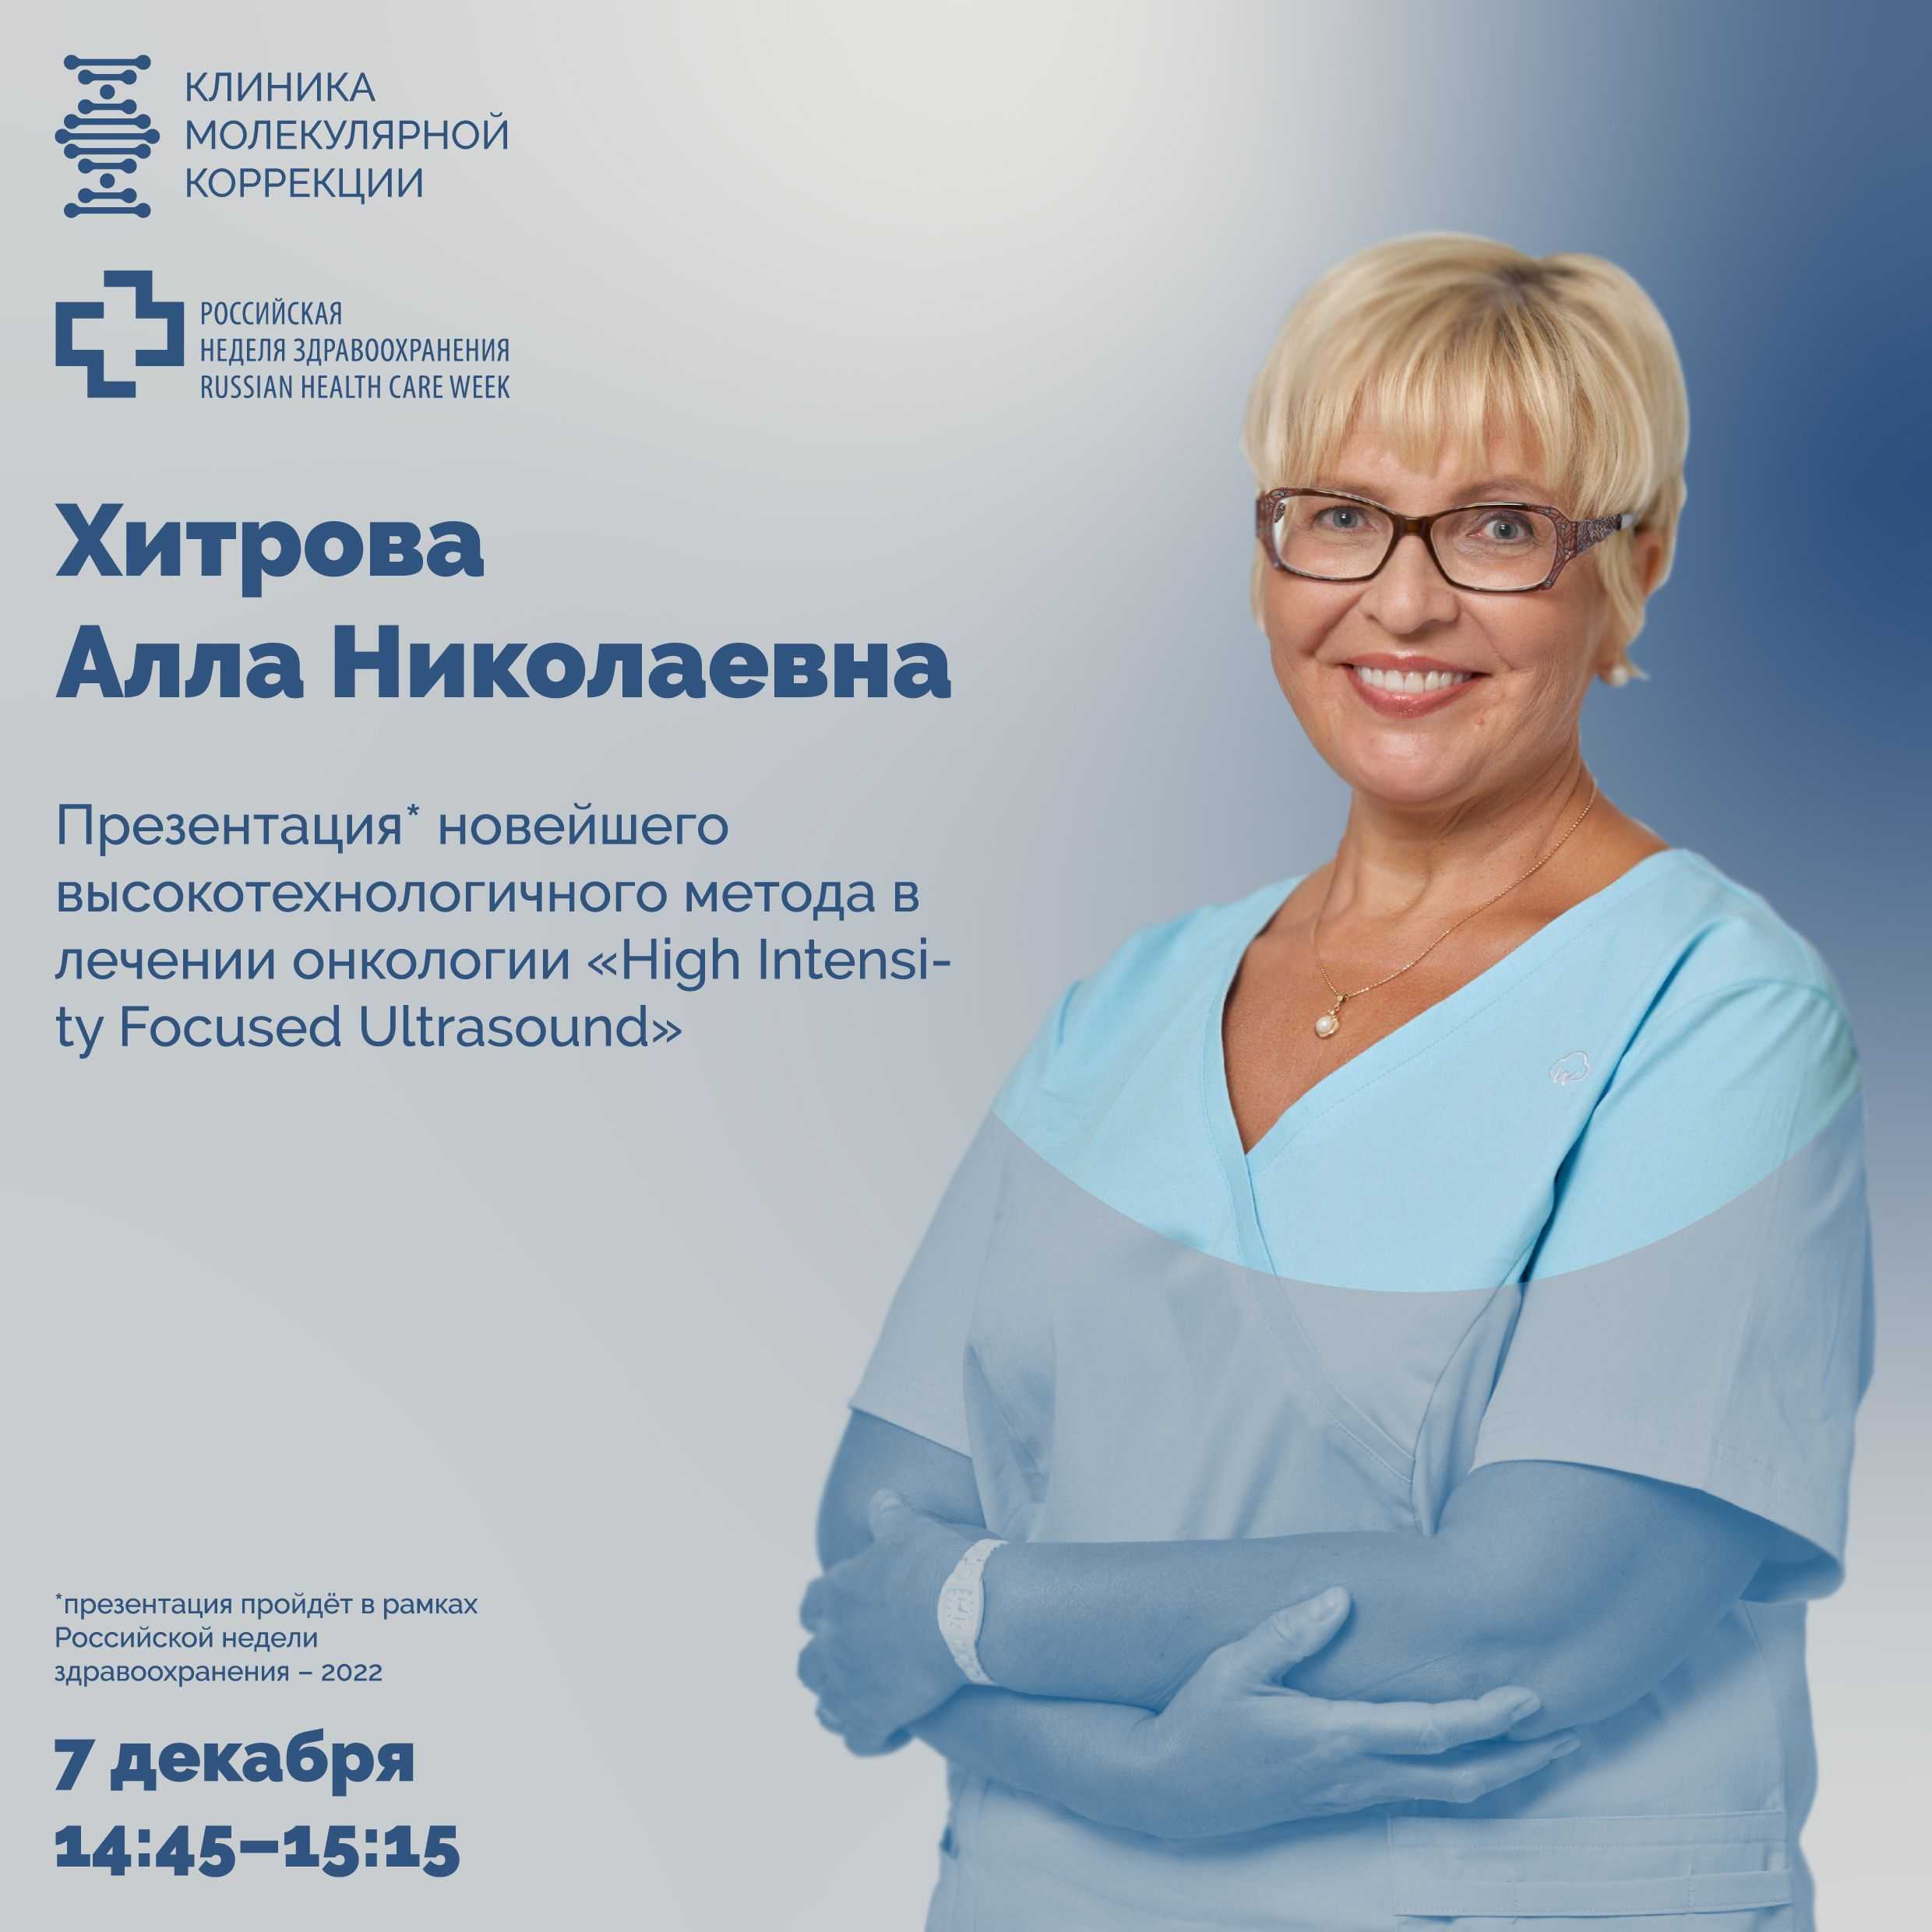 Профессор Хитрова А.Н. 07 декабря 2022 выступит с научно-практическим докладом на всероссийской выставке Здравоохранение-2022